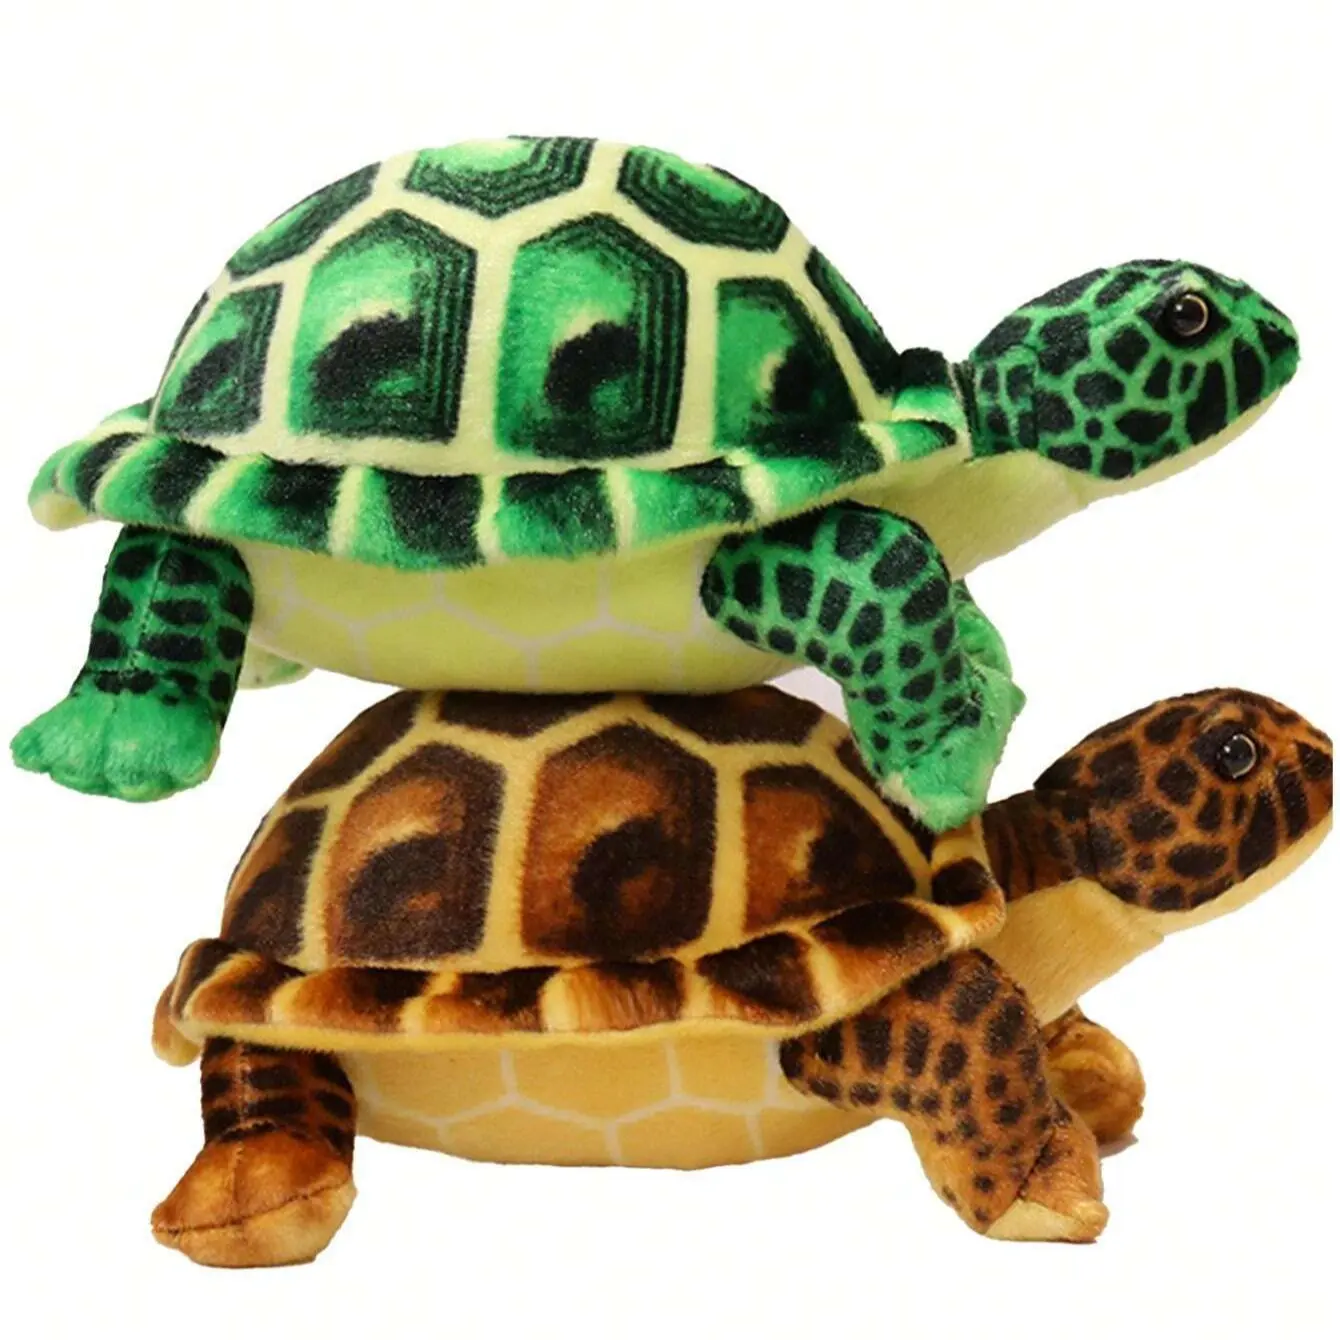 Brinquedo de pelúcia simulado de tartaruga marinha, ornamento de tartaruga grande, brinquedo de pelúcia de 30 cm/11.81 polegadas, animal marinho de desenho animado, brinquedo de pelúcia